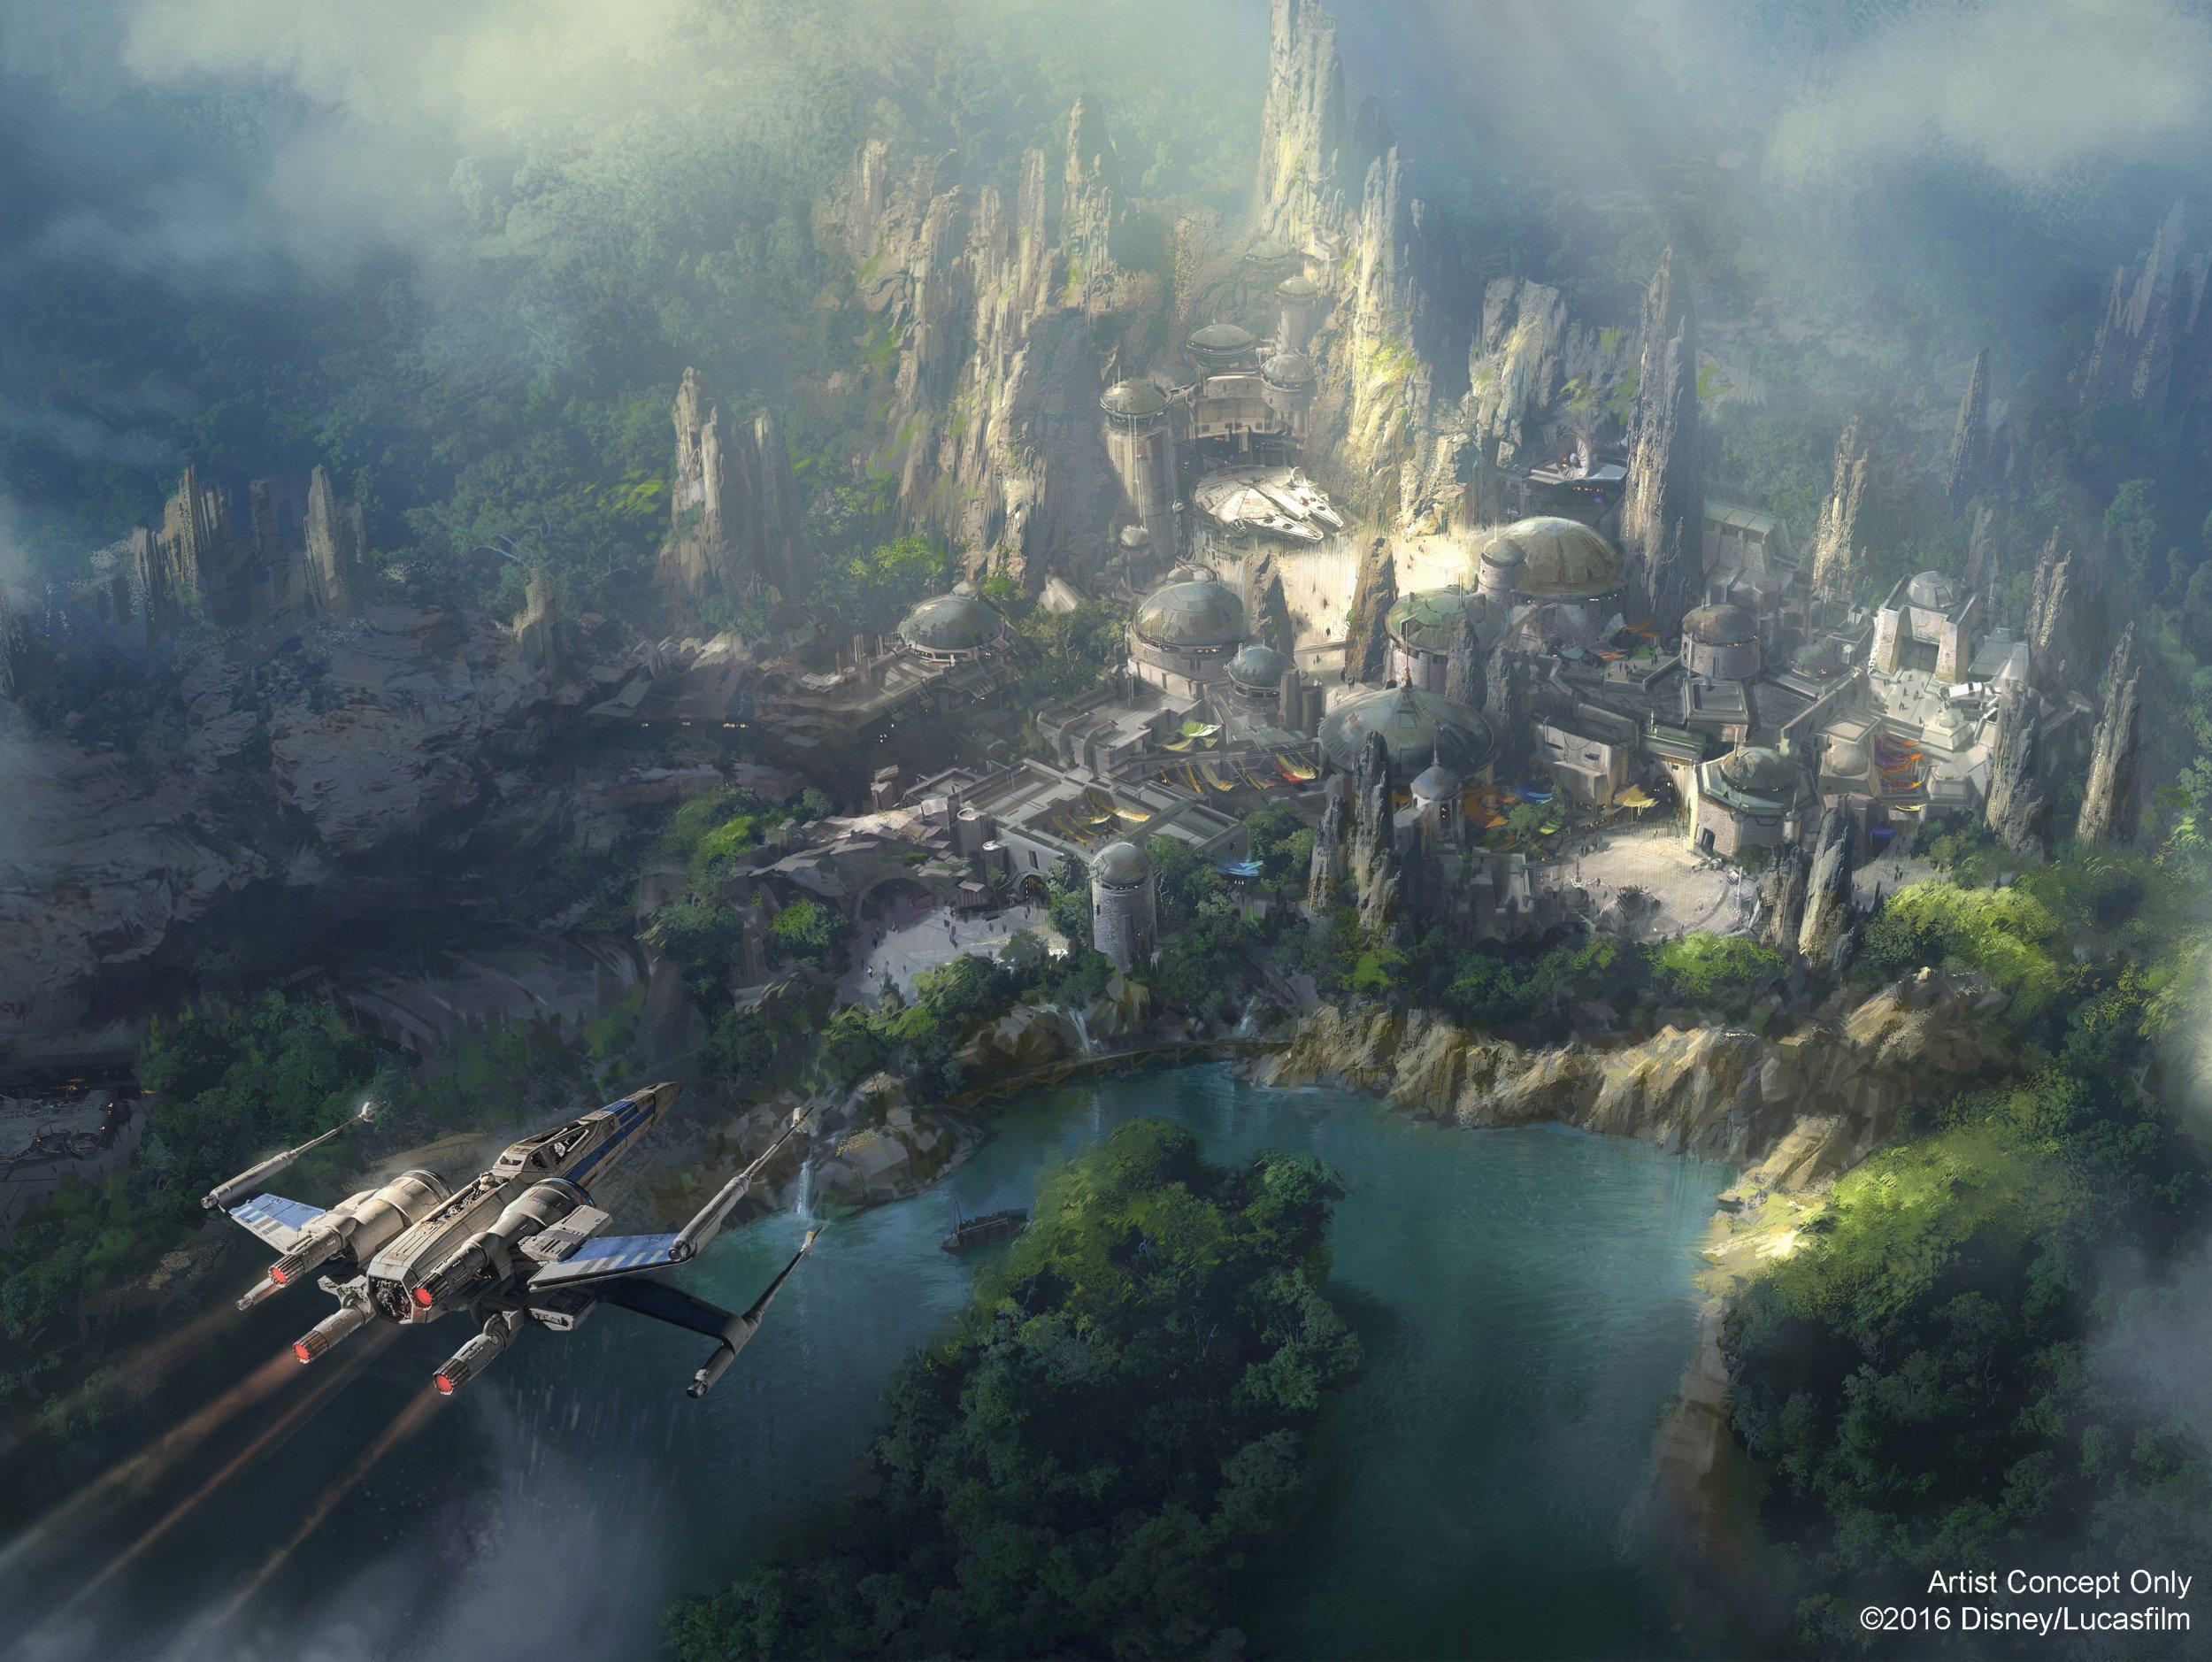 When Will Star Wars: Galaxy Edge open in Disneyland, Disney